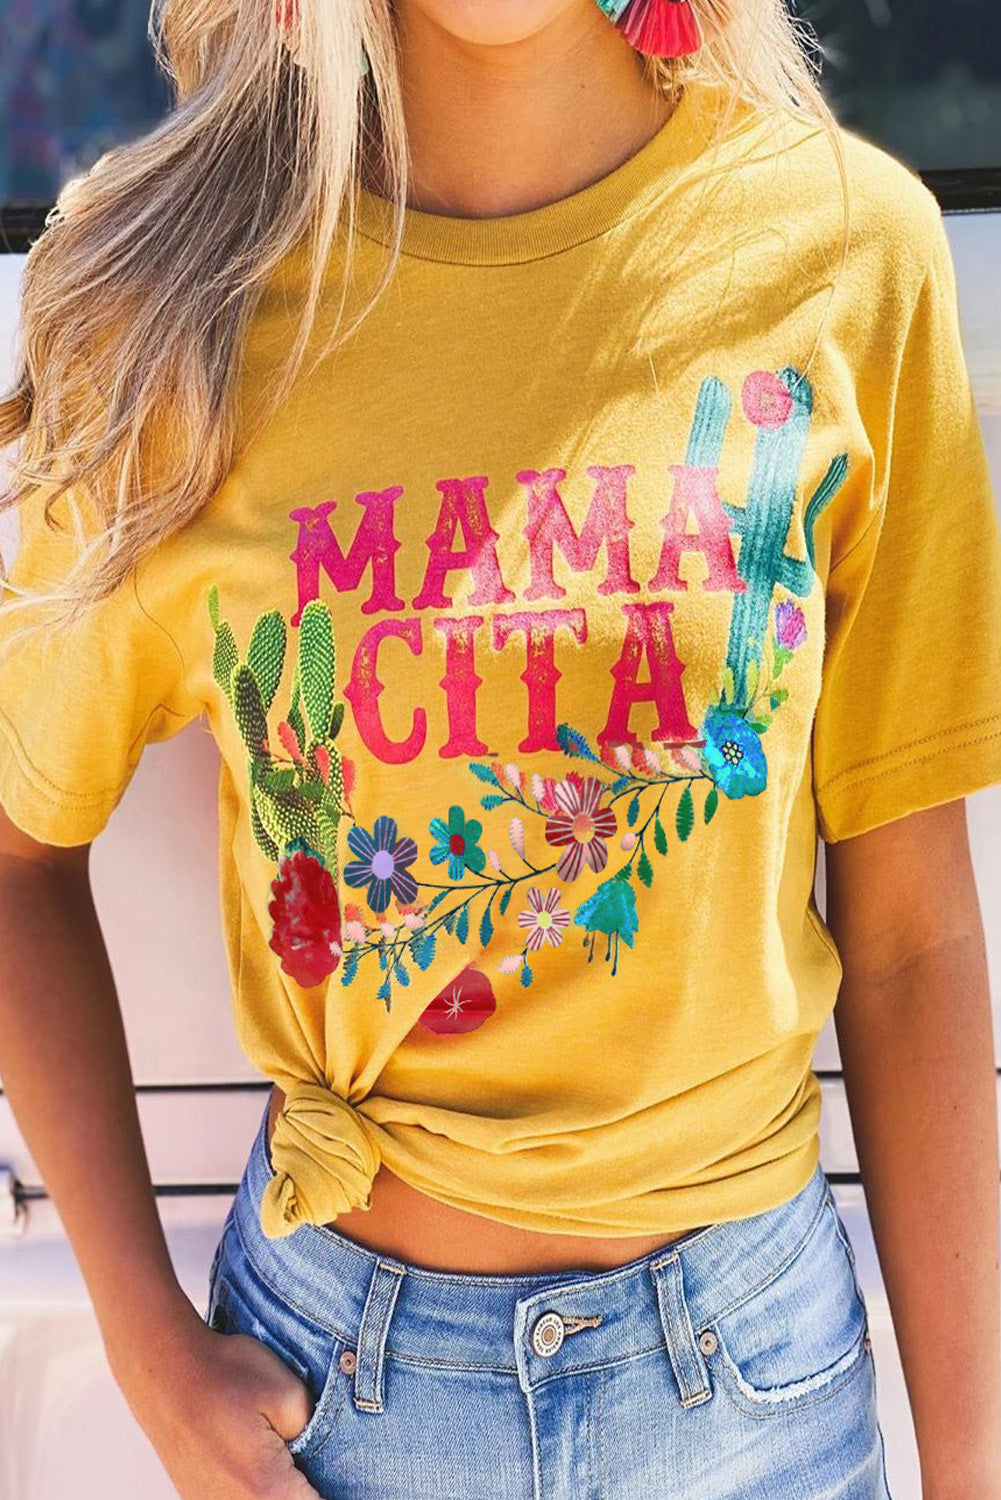 Mamacita avec t-shirt cactus